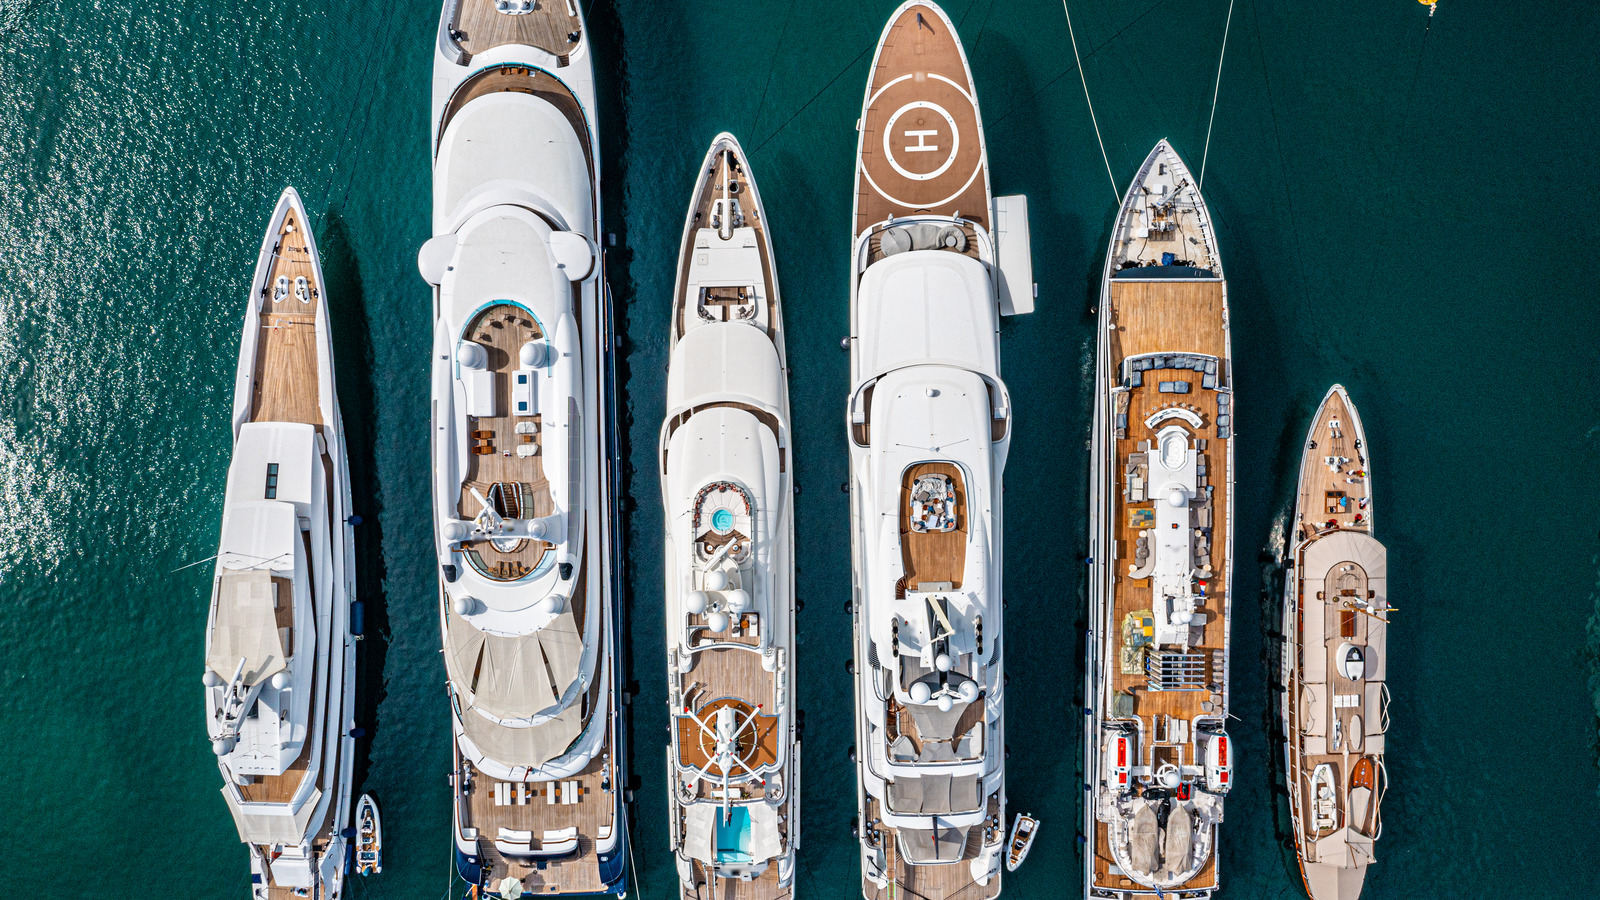 ۶ تا از بزرگترین قایق های تفریحی ساخته شده تا کنون